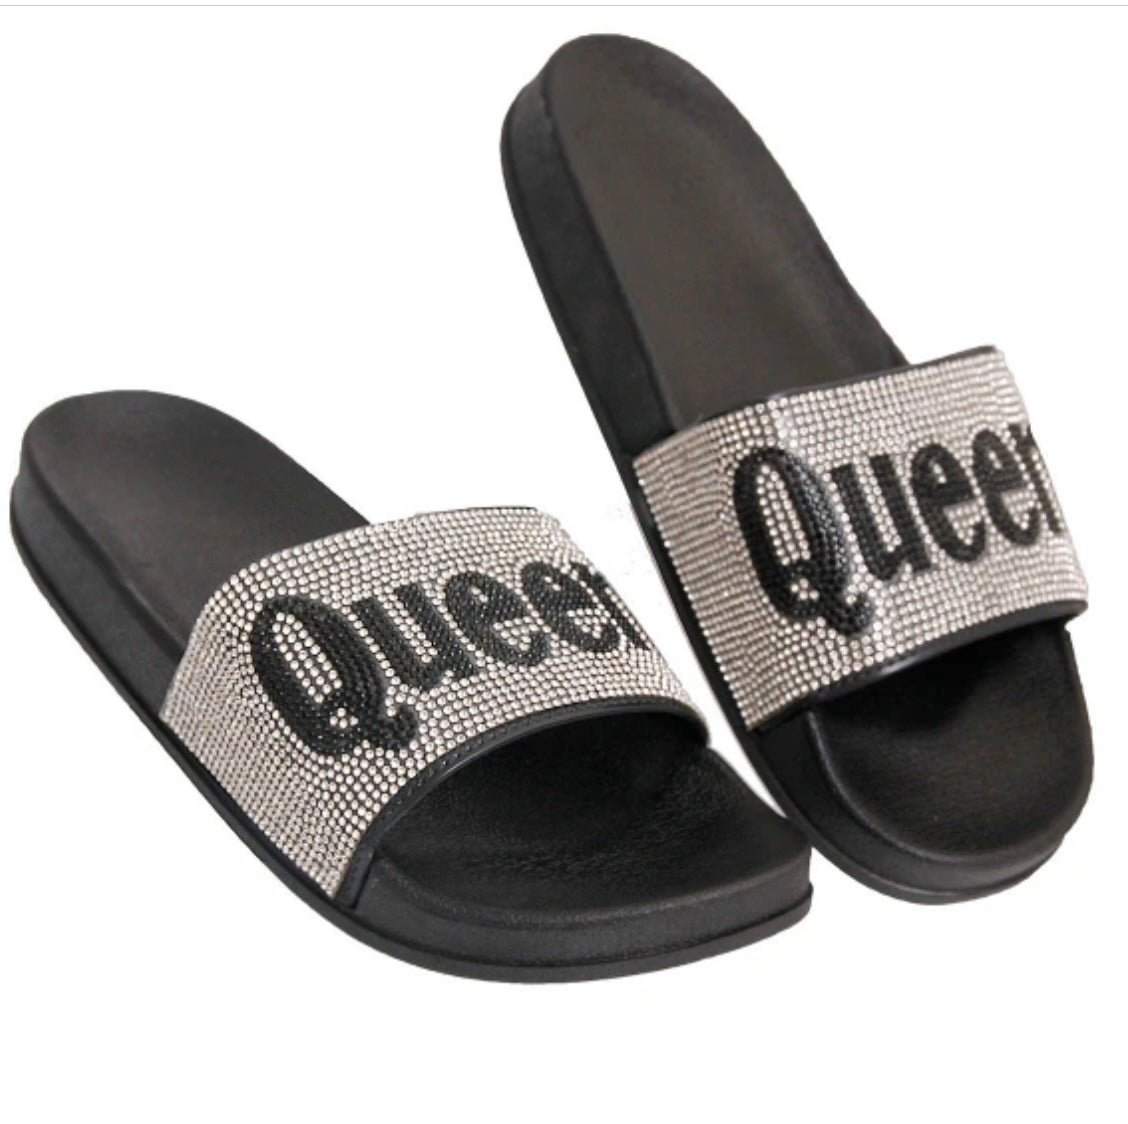 Queen Sliders shoes